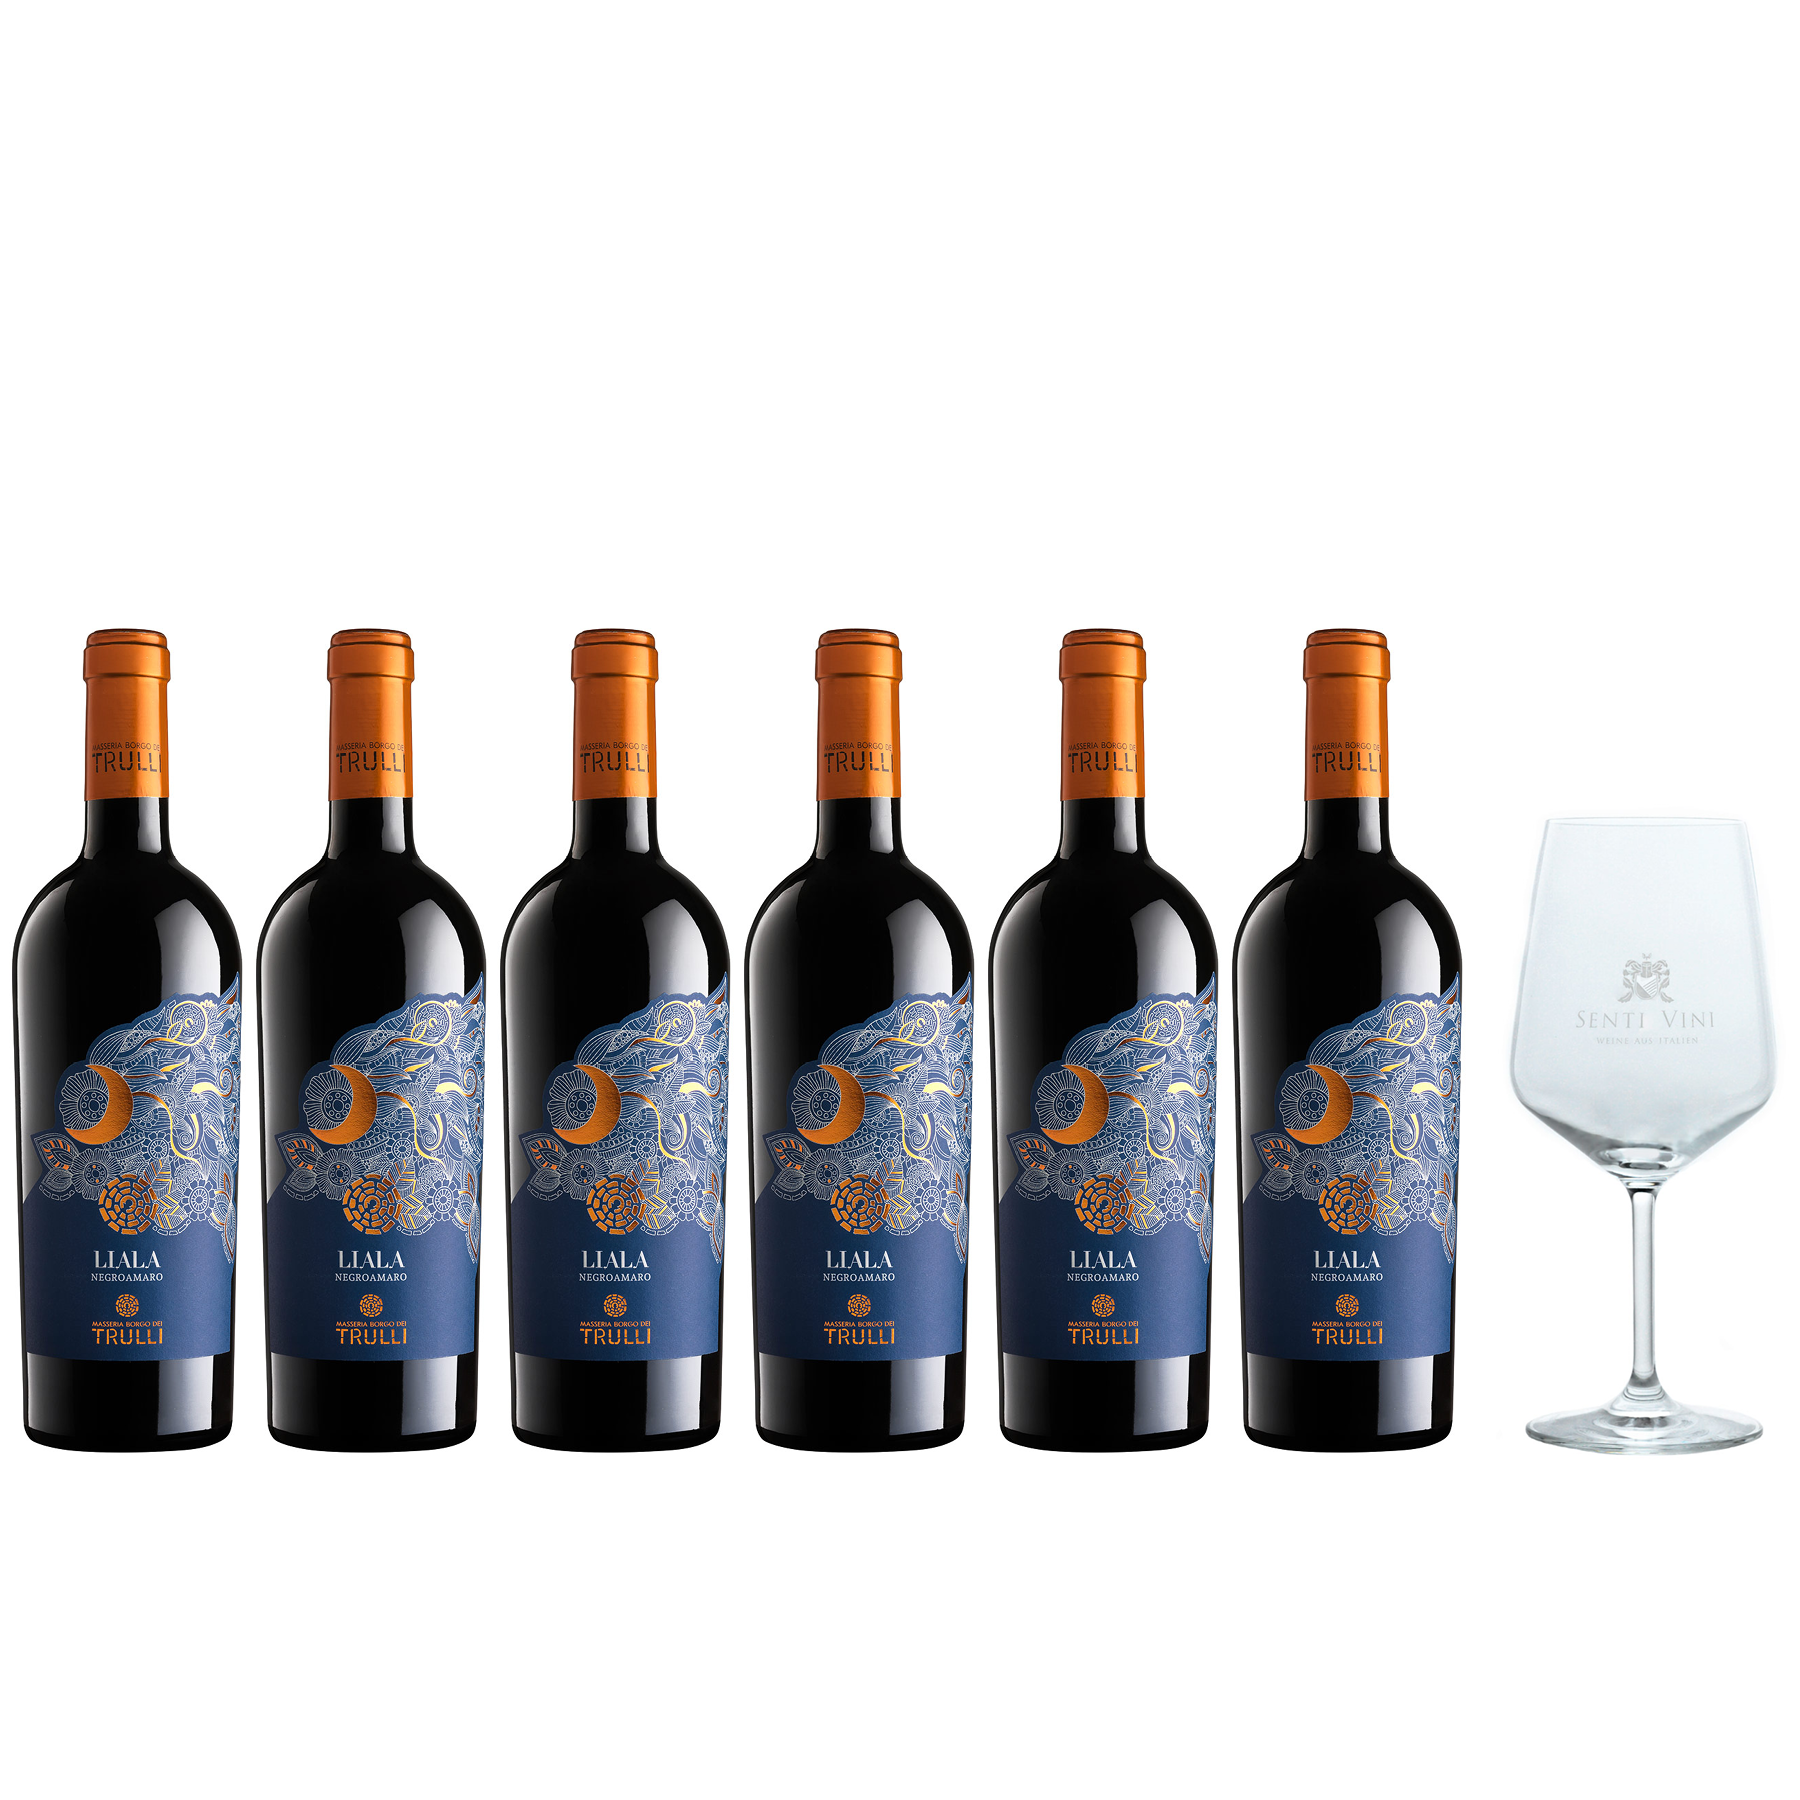 0,75l) Vini bei Spiegelau x IGP Negroamaro (6 dei Weine | Liala Salento Senti Senti Borgo Trulli - Vini mit Online aus kaufen Italien Masseria Weinglas Sparpaket 2021